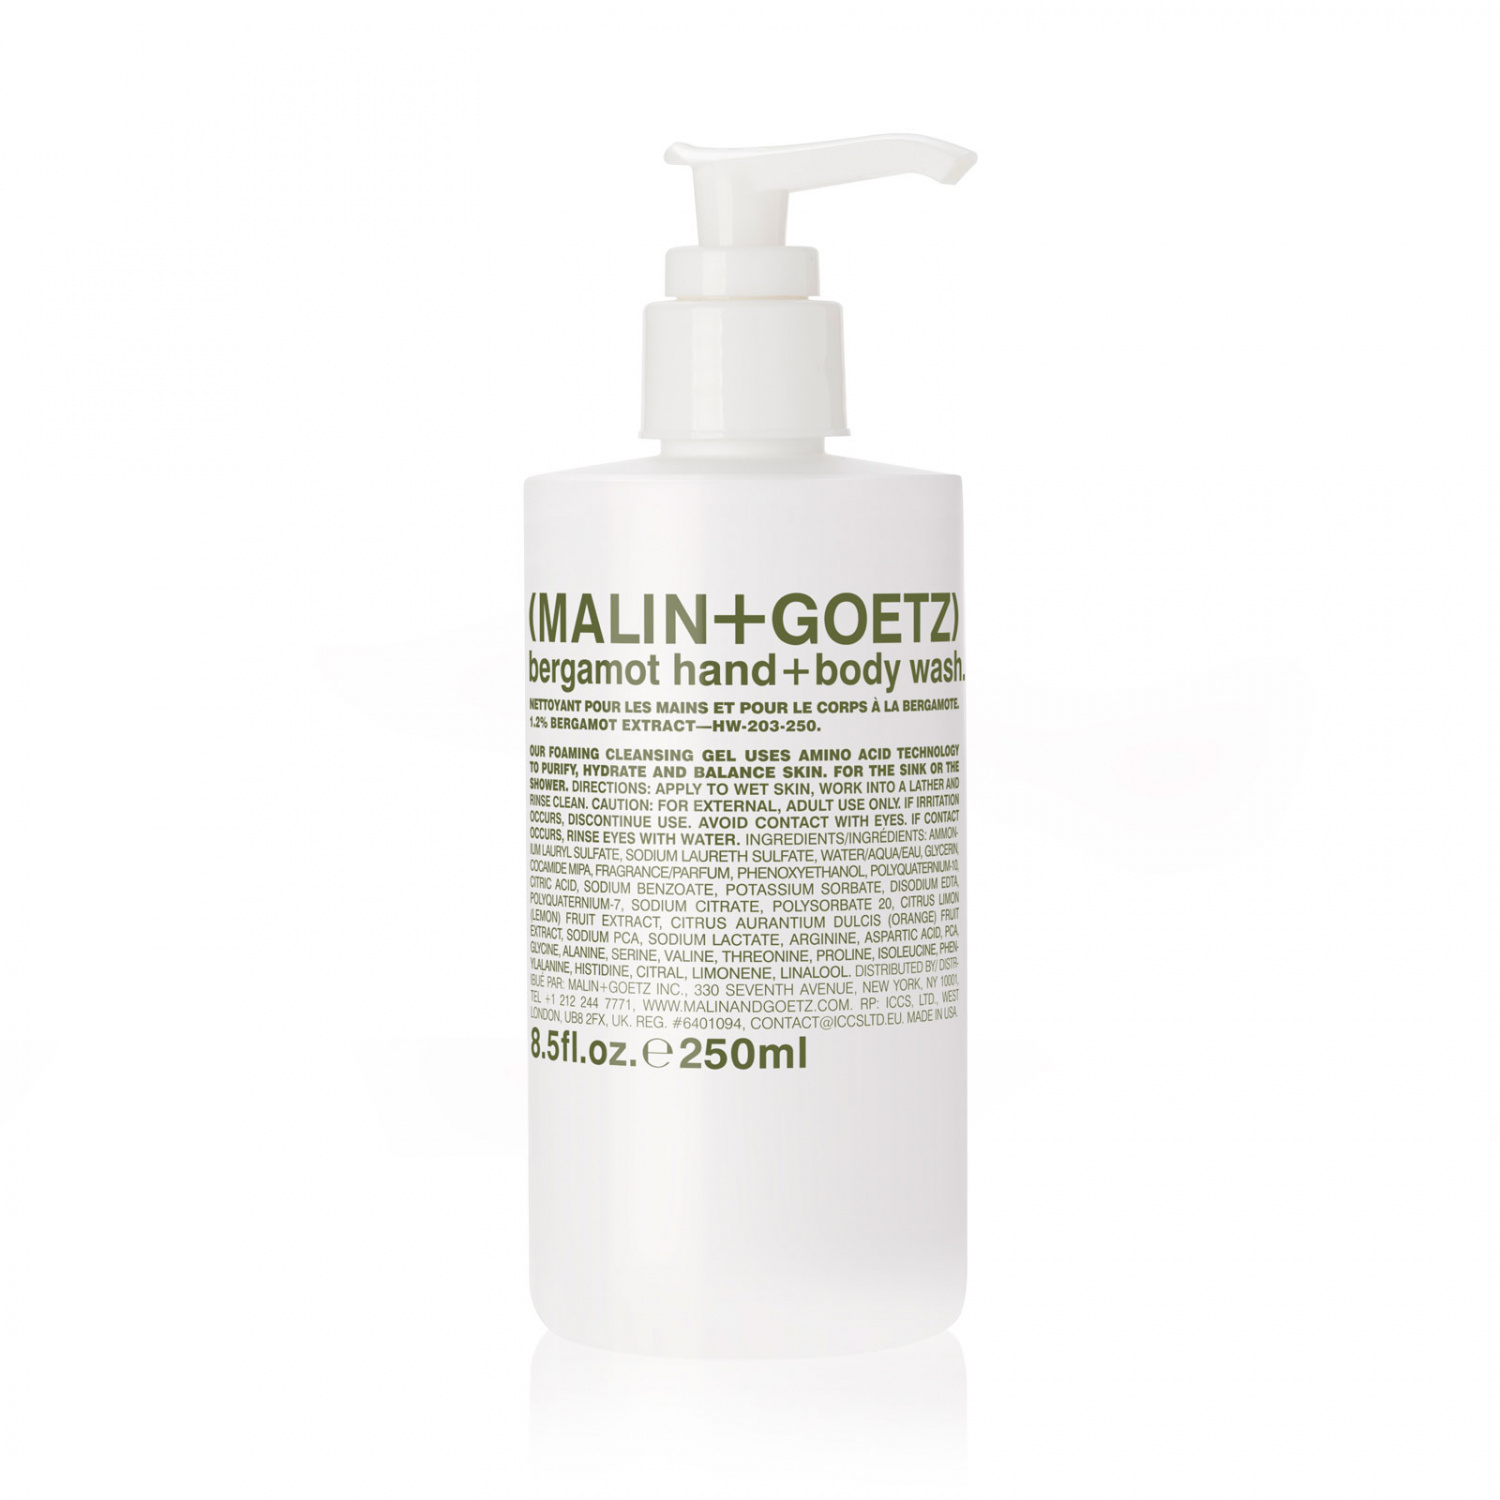 MALIN+GOETZ bergamot hand+body wash 250 ml. - интернет-магазин профессиональной косметики Spadream, изображение 33002